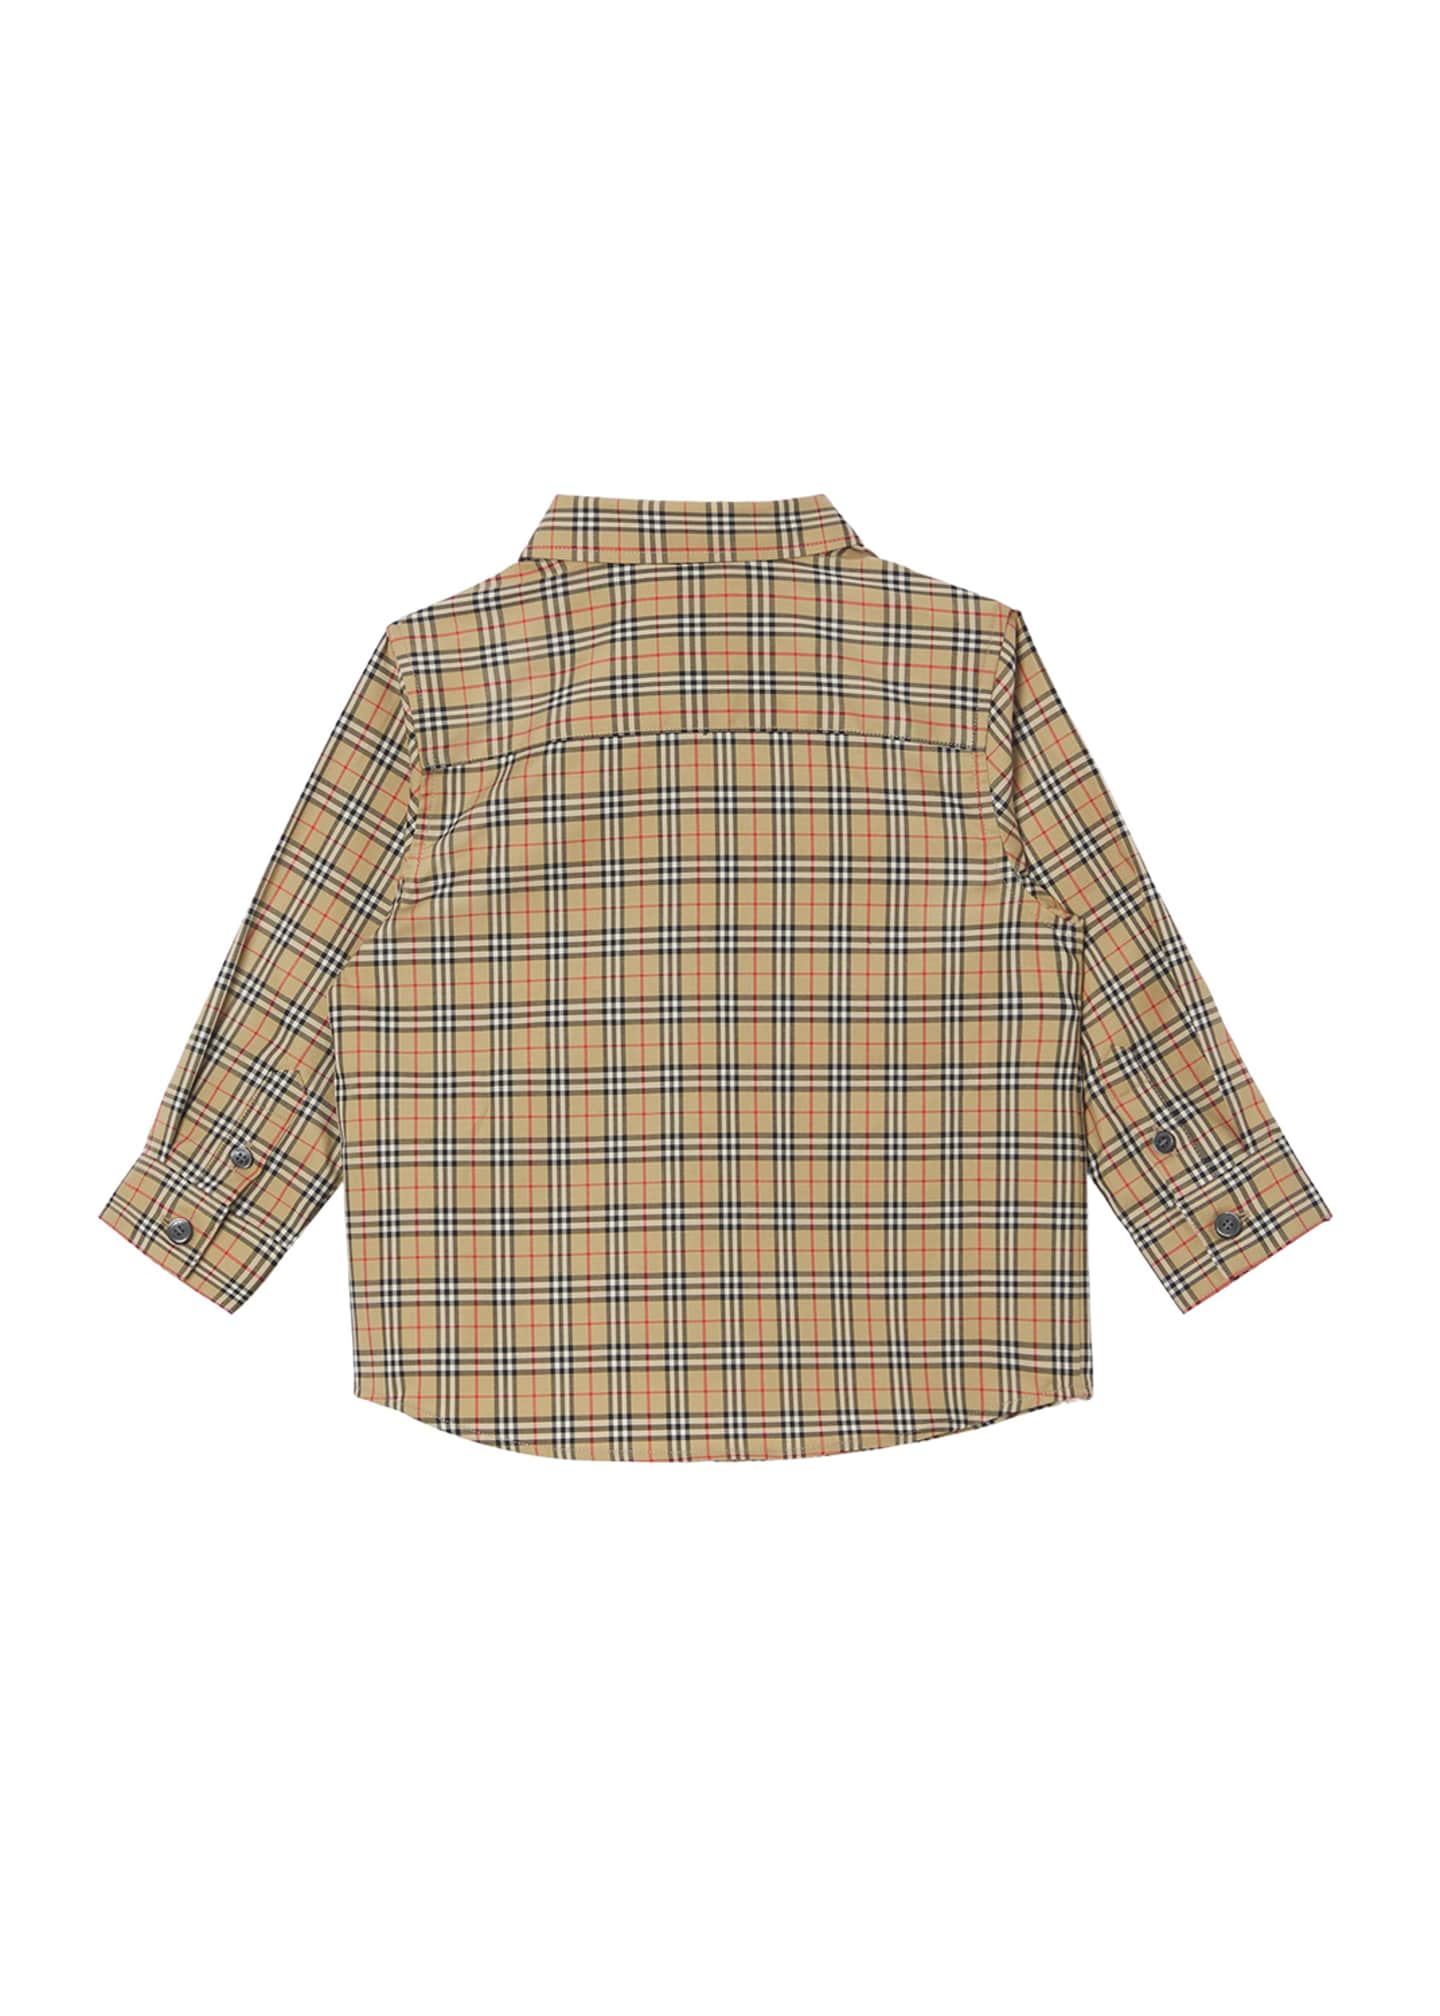 Burberry Boy's Owen Long-Sleeve Shirt, Size 6M-2 - Bergdorf Goodman